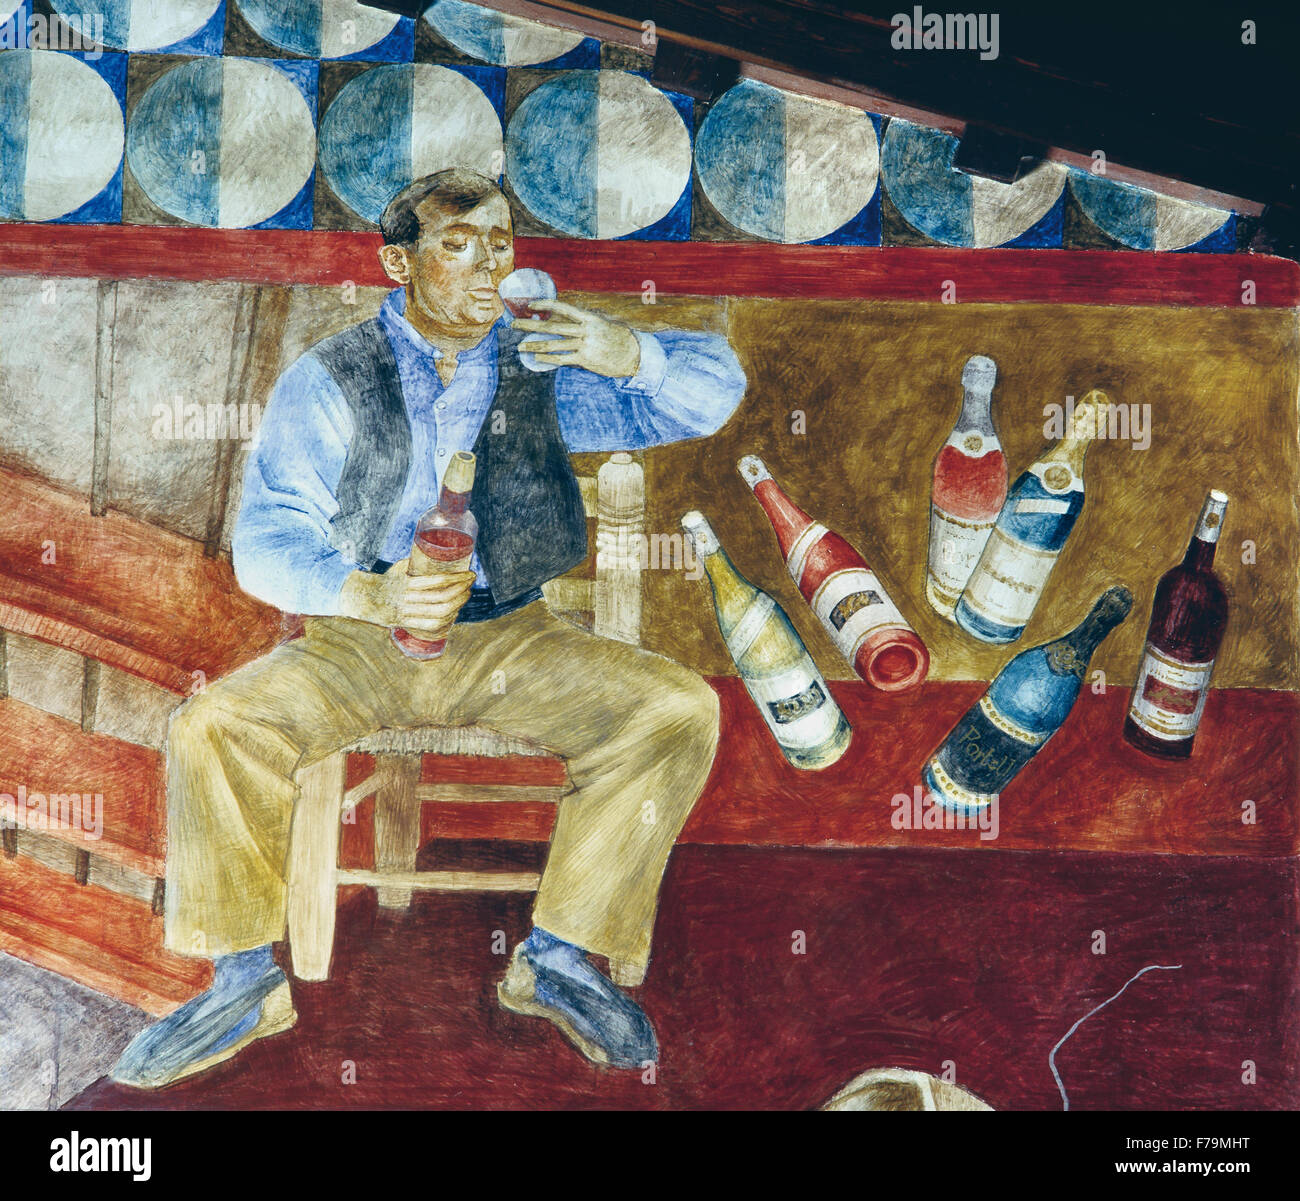 Le consommateur de vin. Détail d'une fresque par l'artiste Ismael Balanyà Moix dans la cave coopérative de Sarral, Tarragone, Catalogne. Banque D'Images